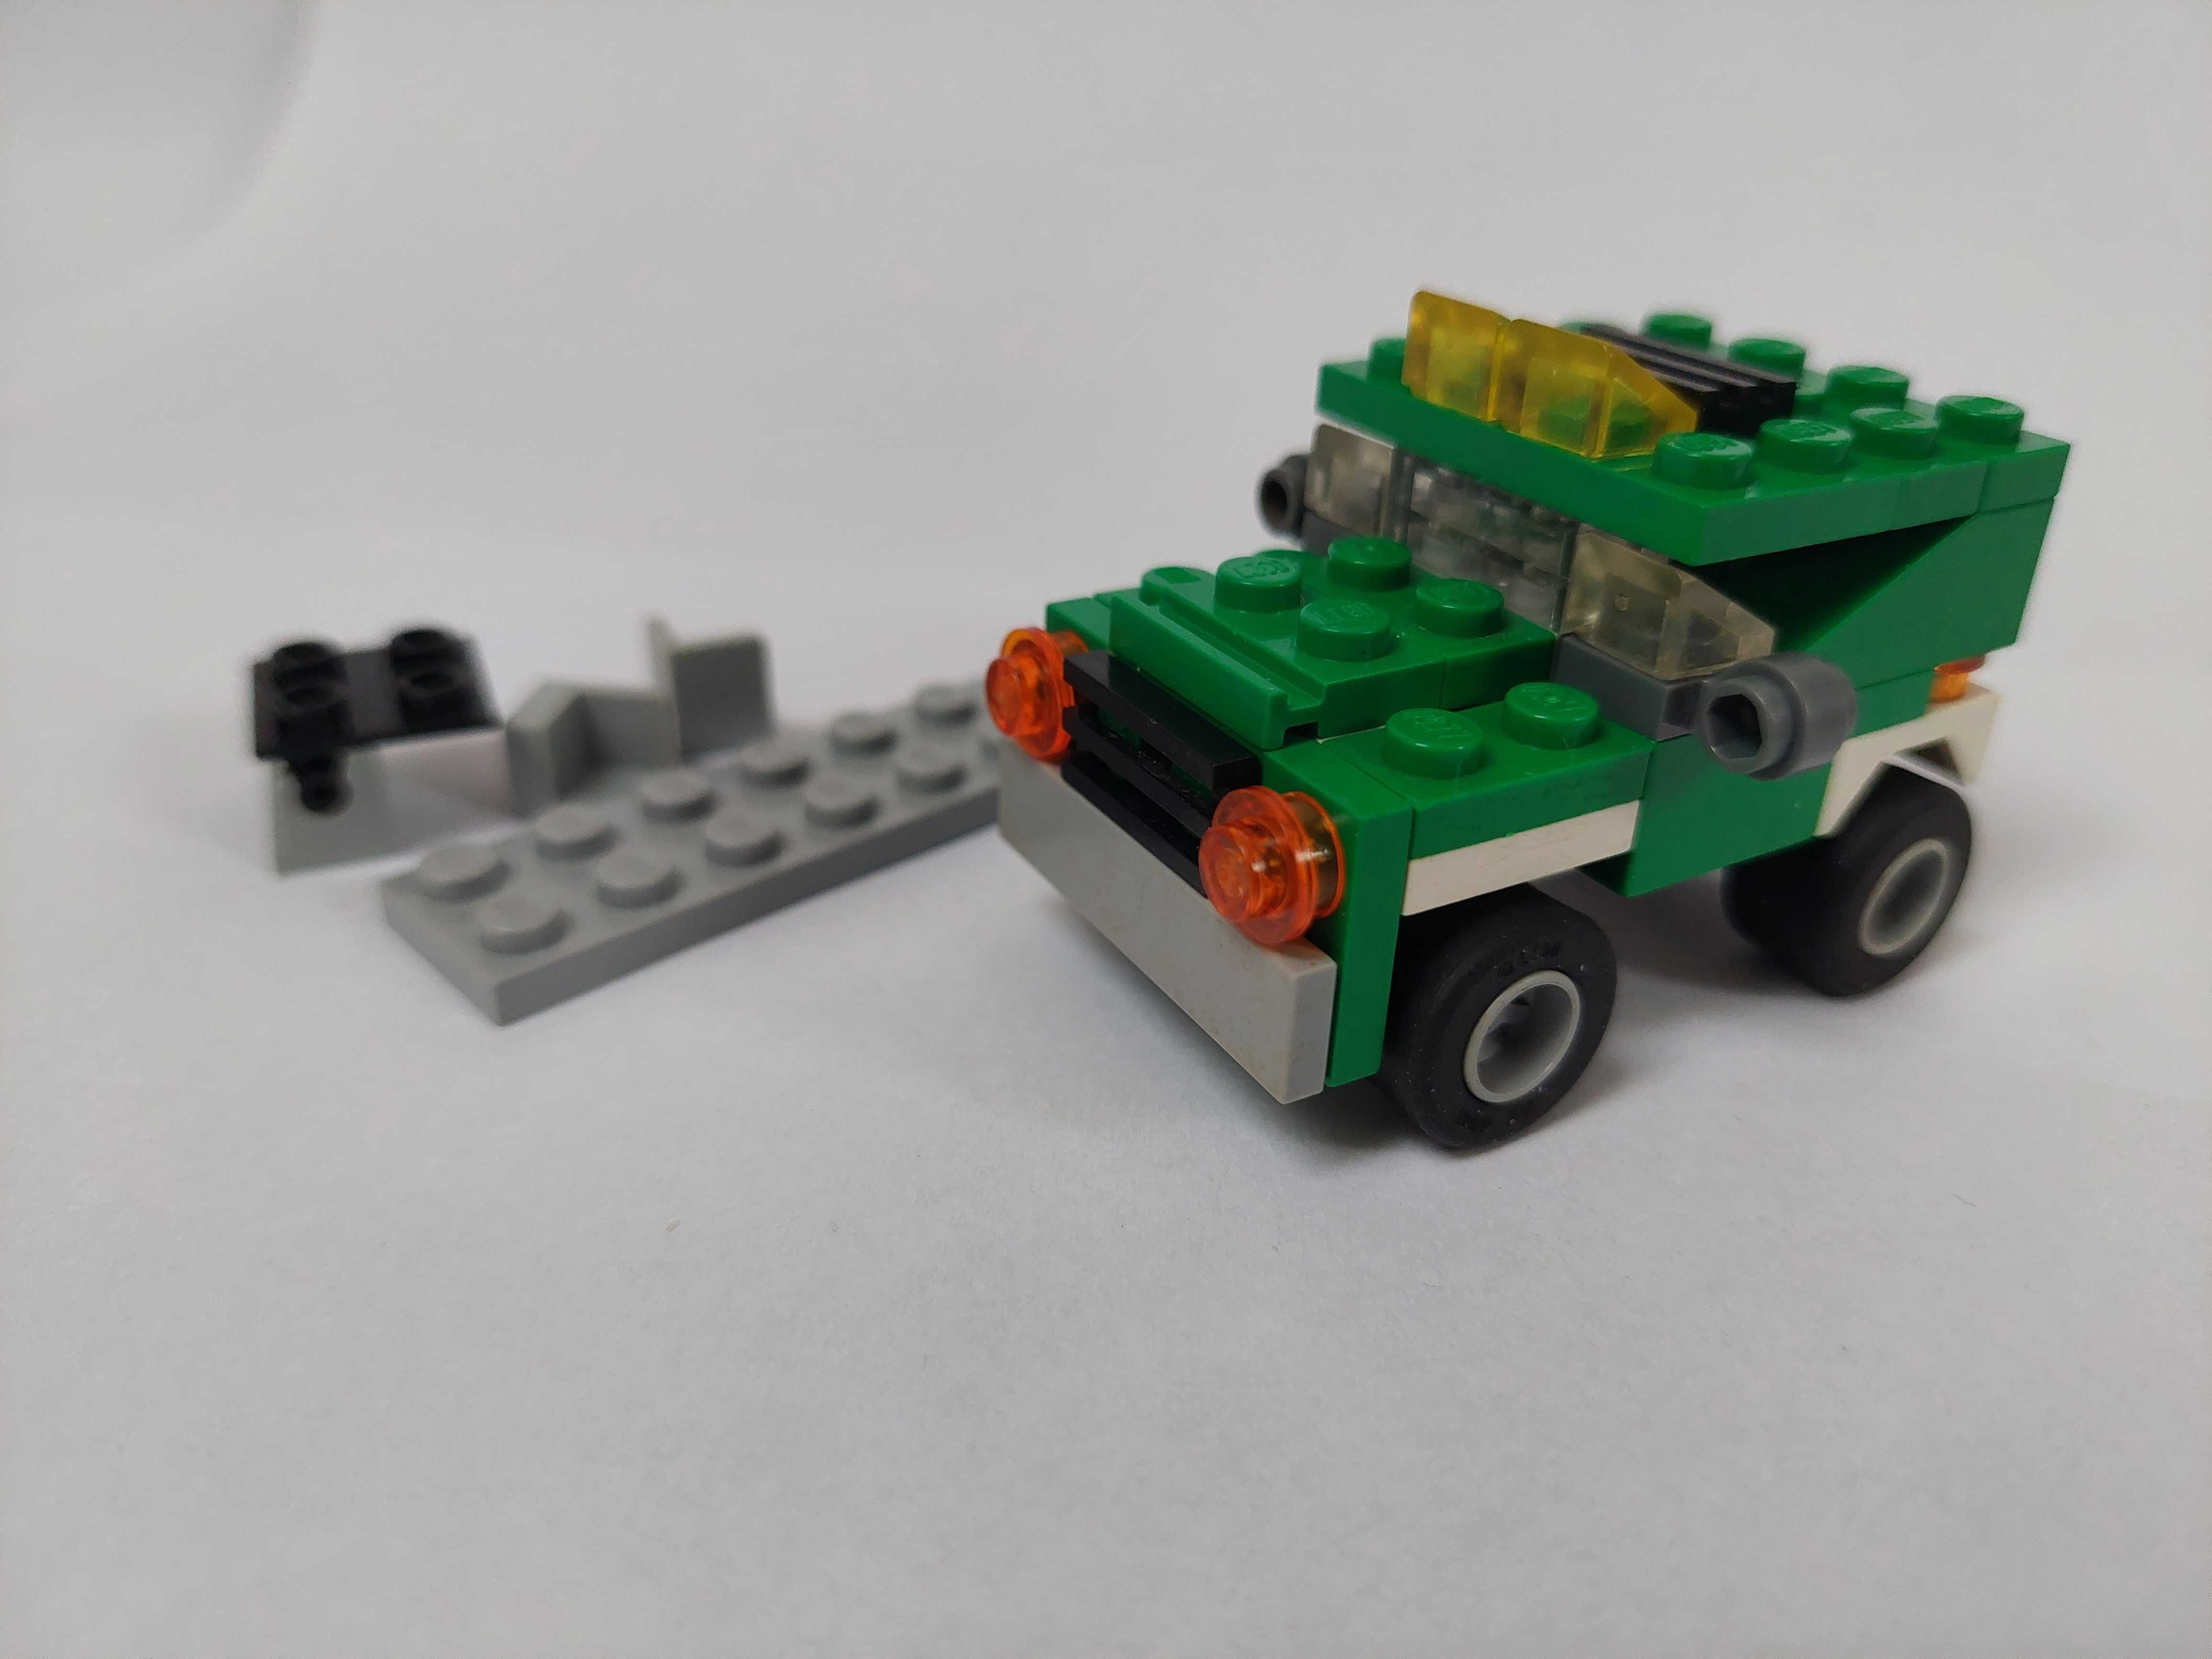 Lego Creator 5865 3w1 Mini Dumper kompletny z instrukcjami